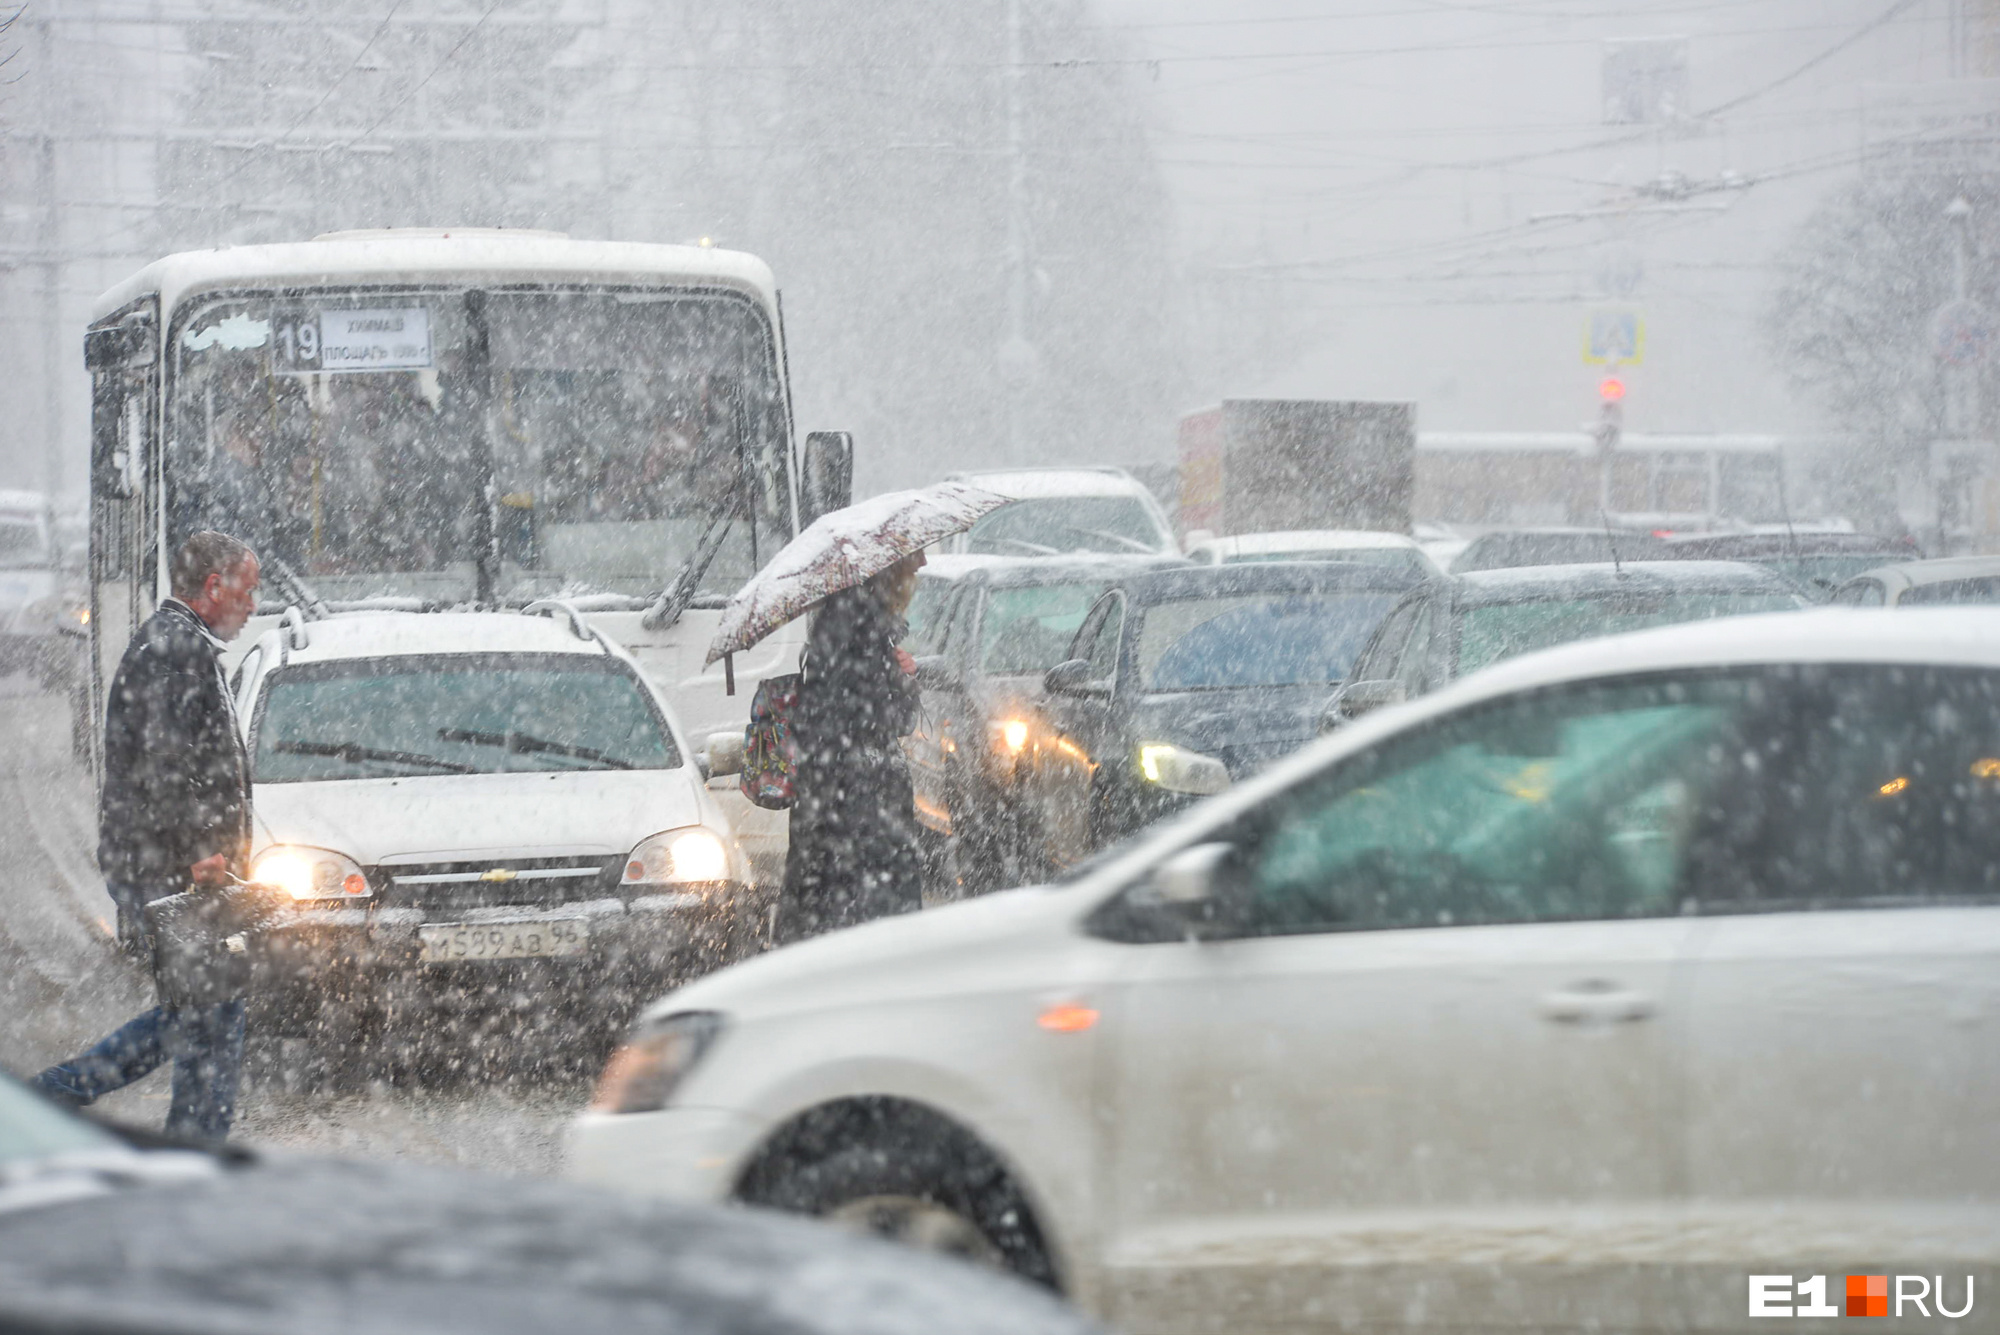 Оставайтесь дома! На Екатеринбург обрушится сильный снегопад — экстренное предупреждение